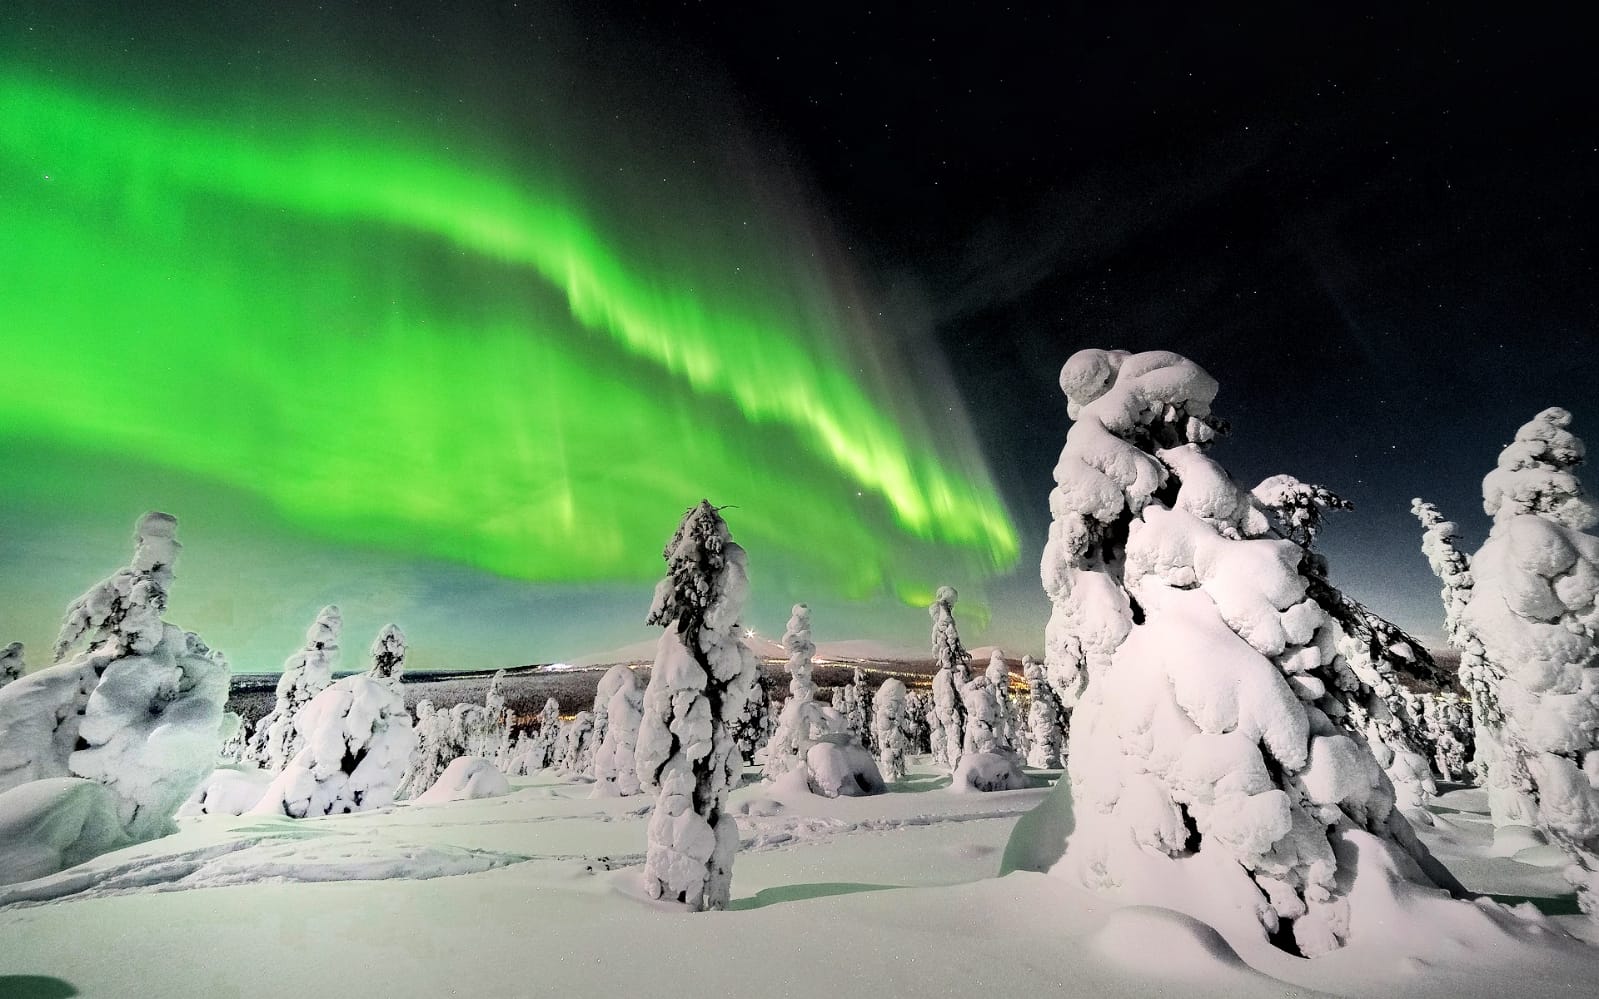 Ziemeļblāzmas meklēšana, Поиск северного сияния, Somija, Финляндия